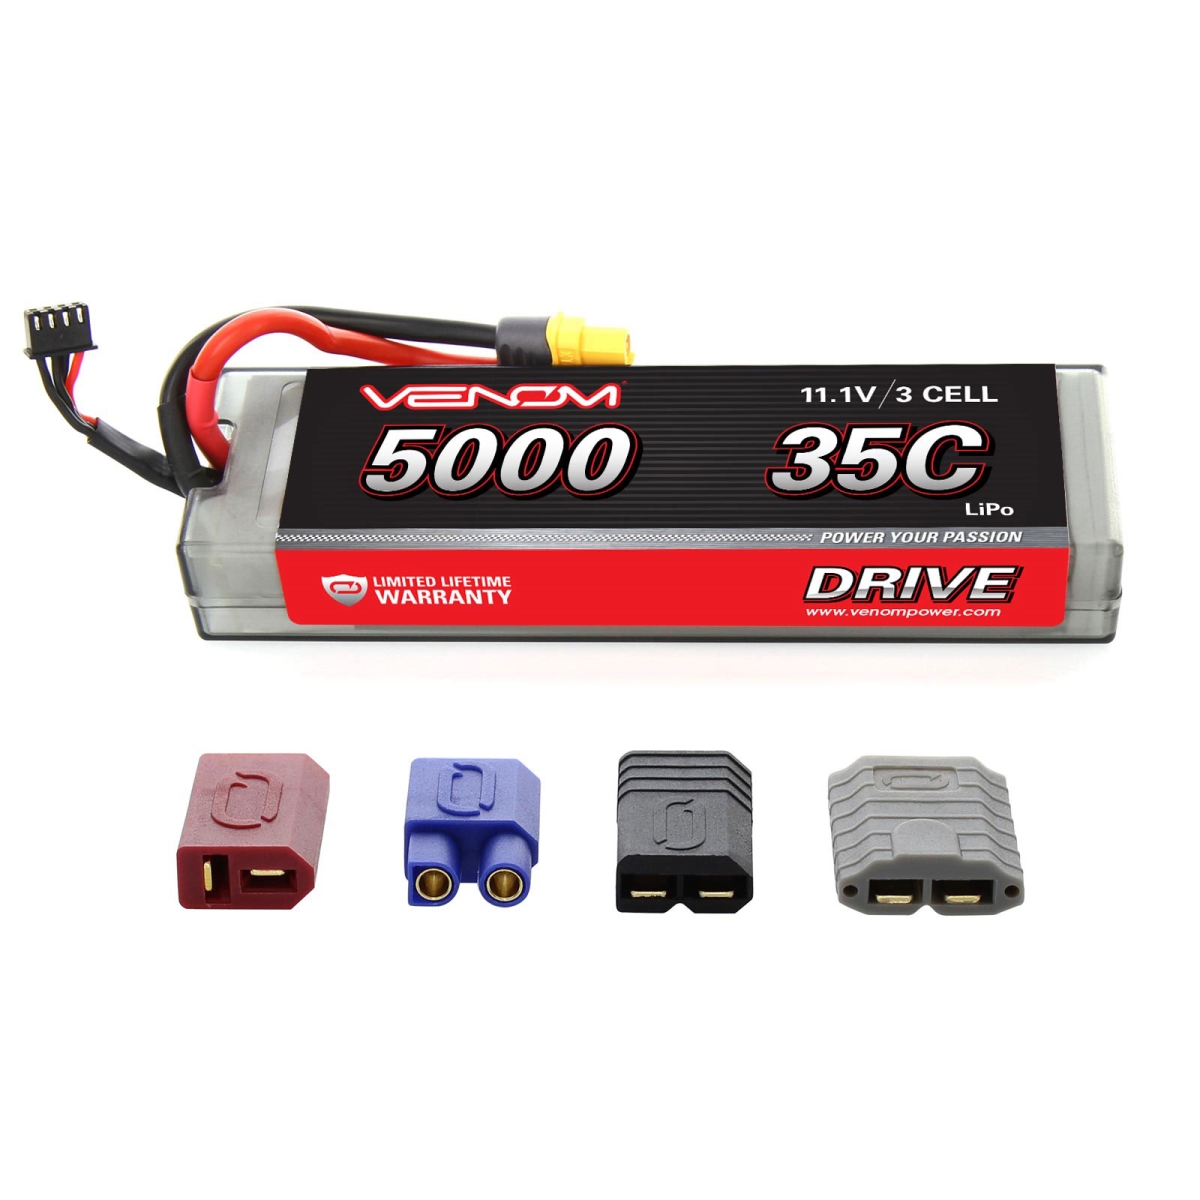 Vnr15128 Drive 35c 3s 5000mah 11.1v Lipo Hard Case Battery With Uni Plug